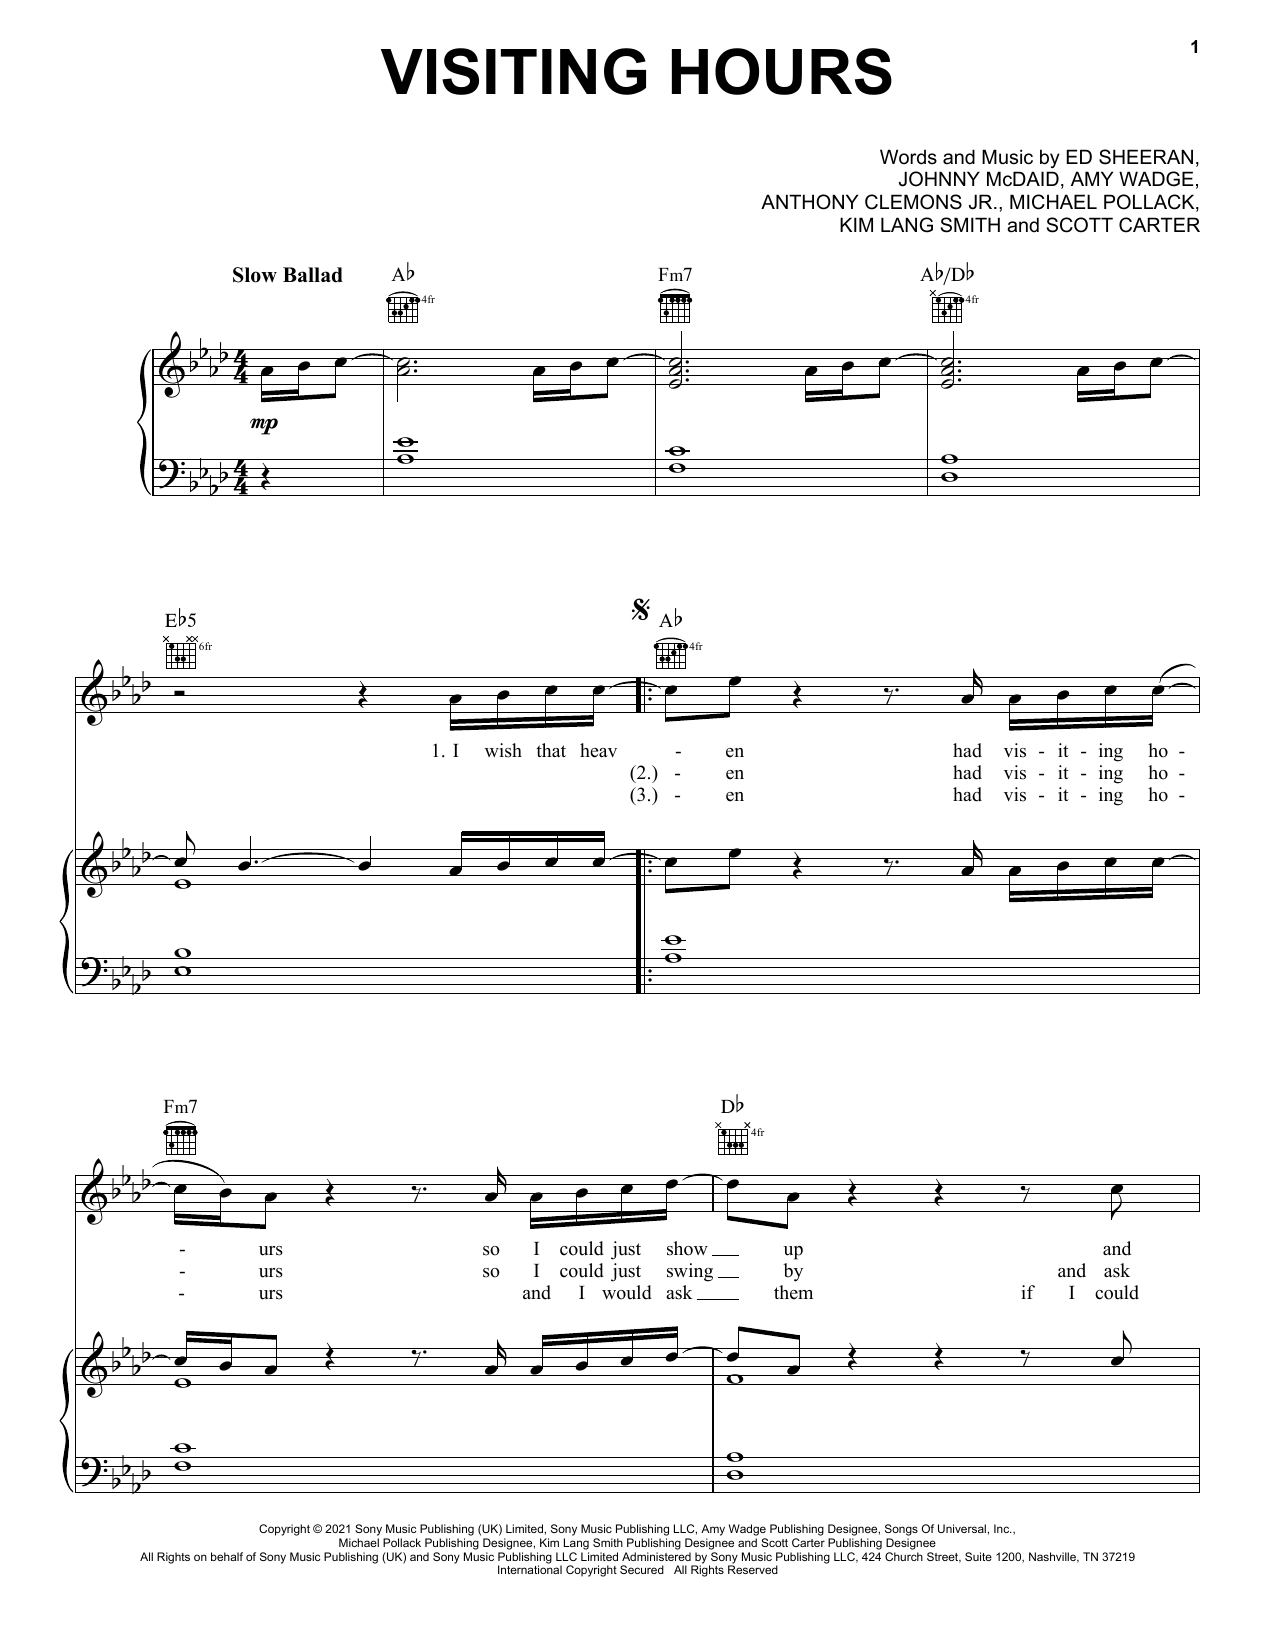 Ed Sheeran Visiting Hours sheet music notes printable PDF score